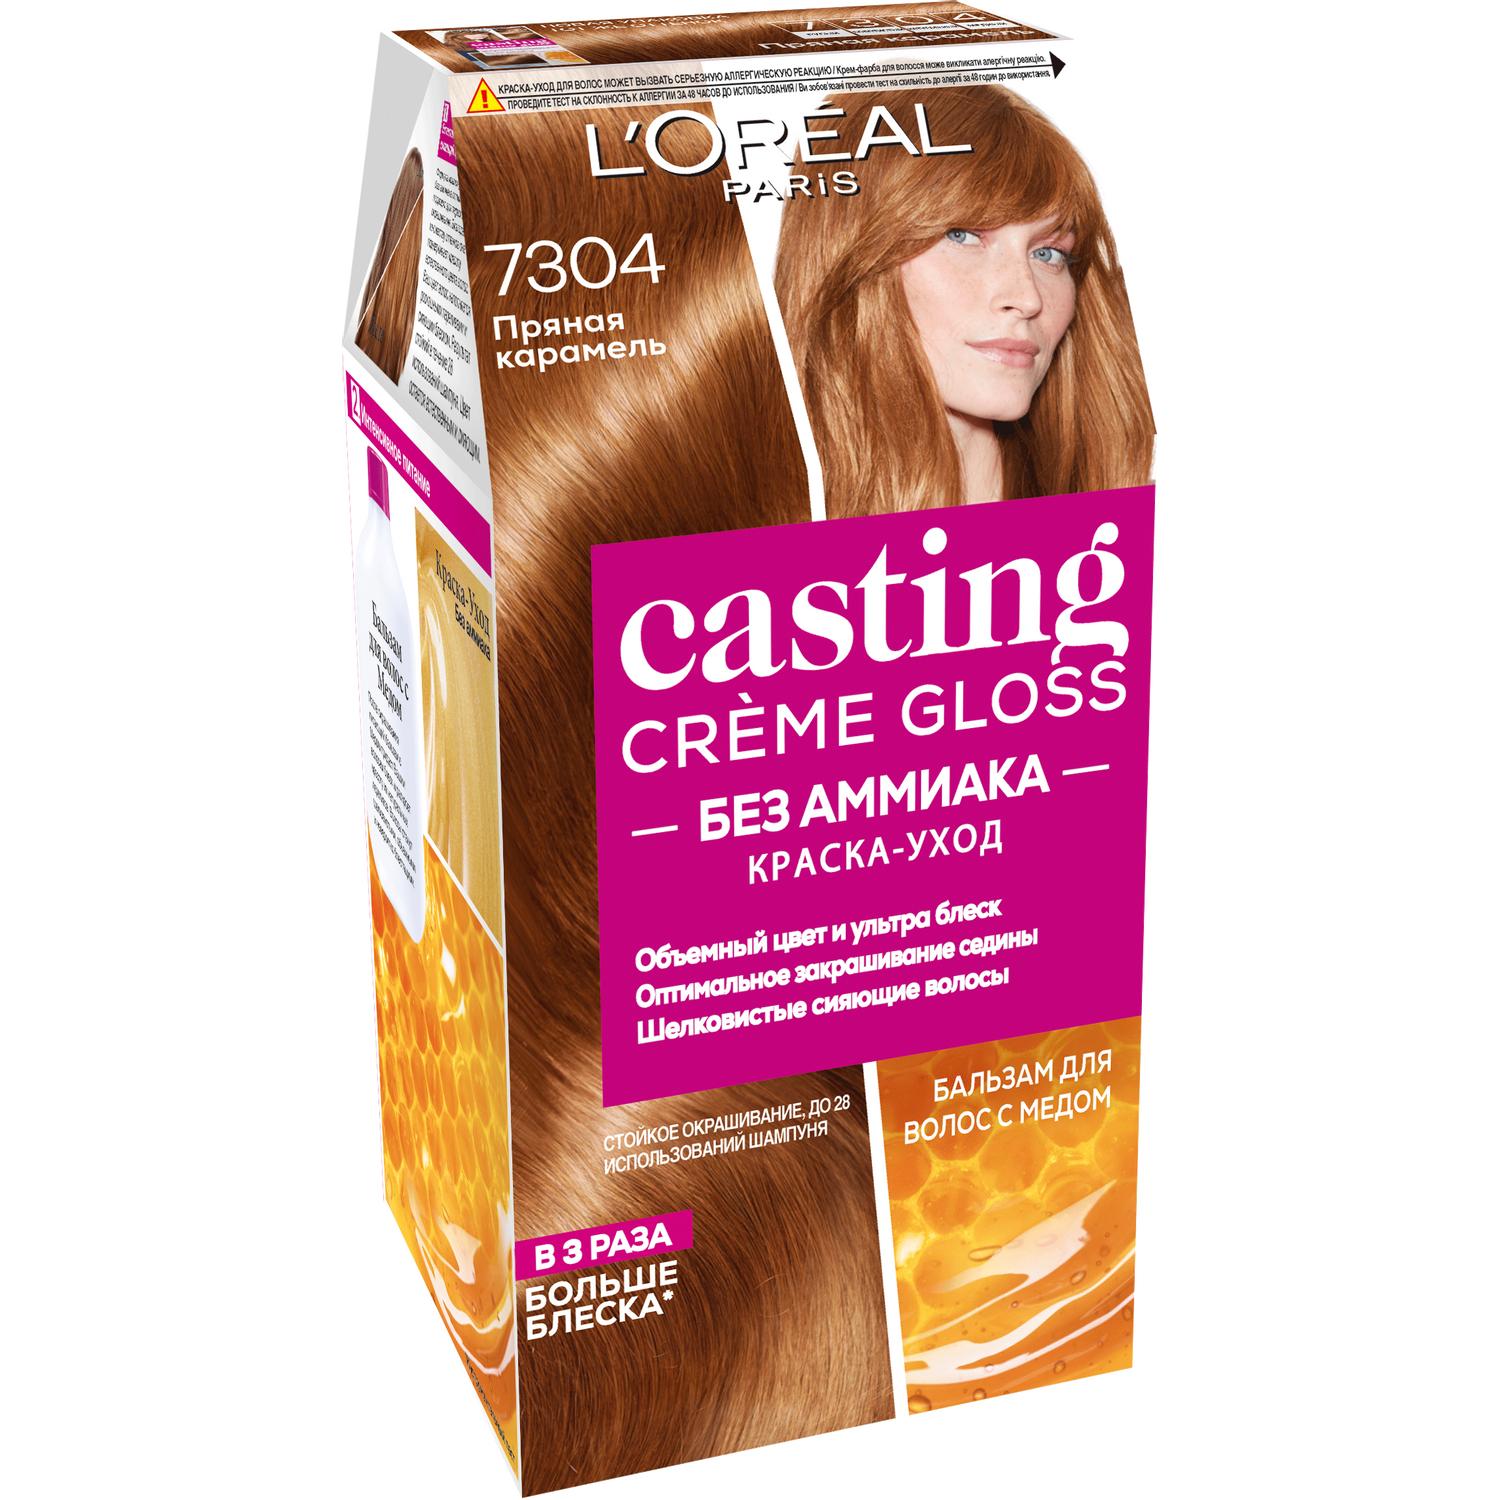 Краска L’Oreal Casting Creme Gloss 7304 254 мл Пряная карамель (A8005227) крем краска для волос аммиачная 3 16 холодный темный шатен